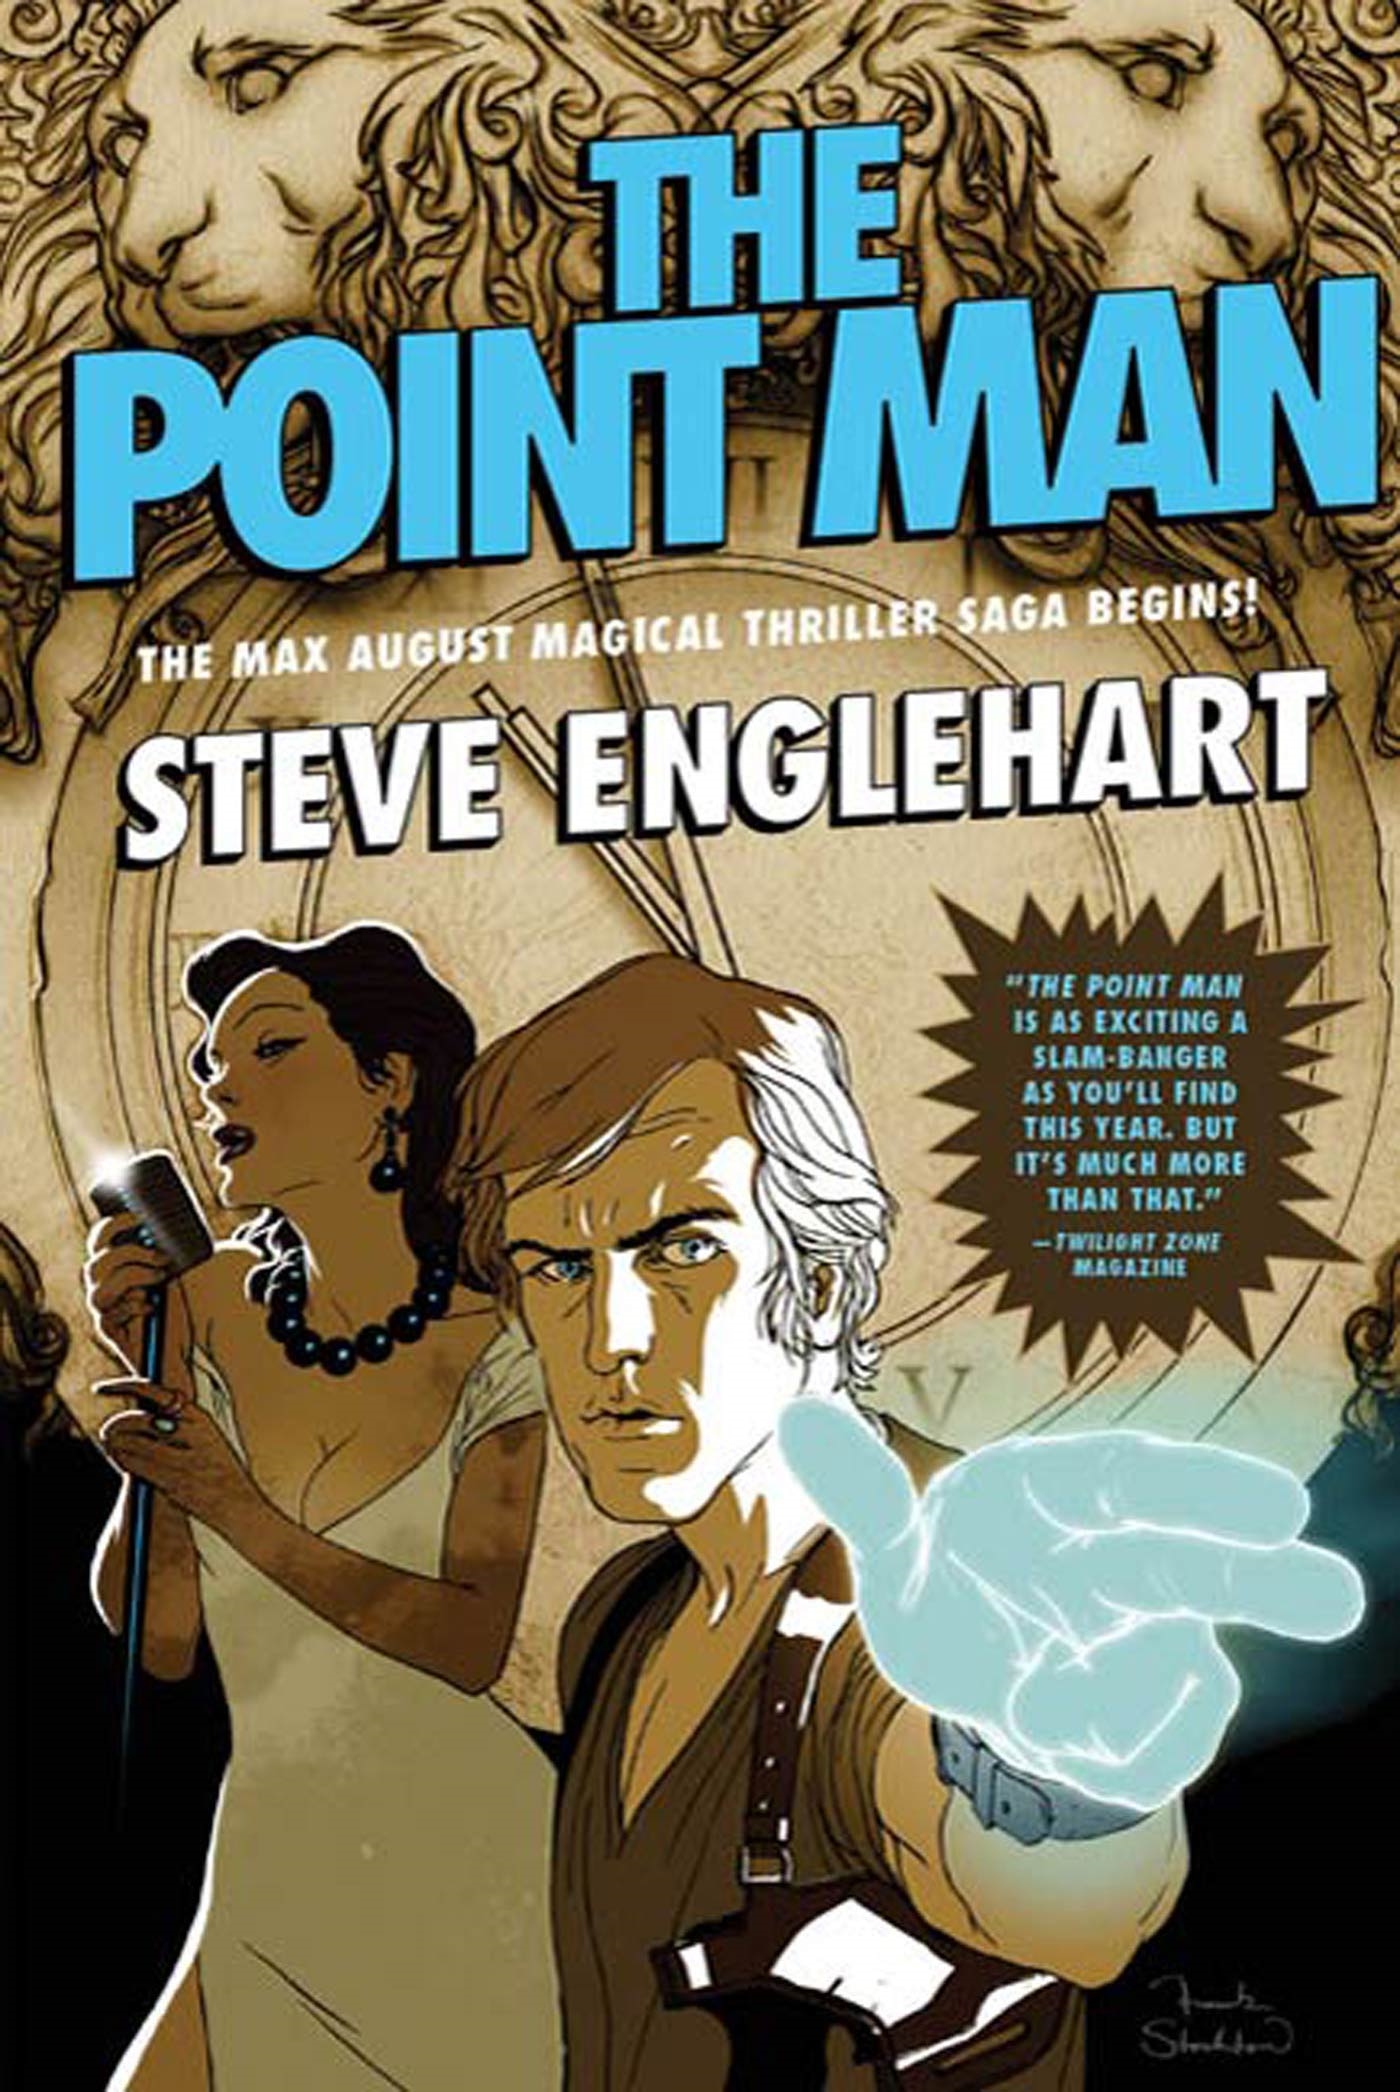 The Point Man by Steve Englehart